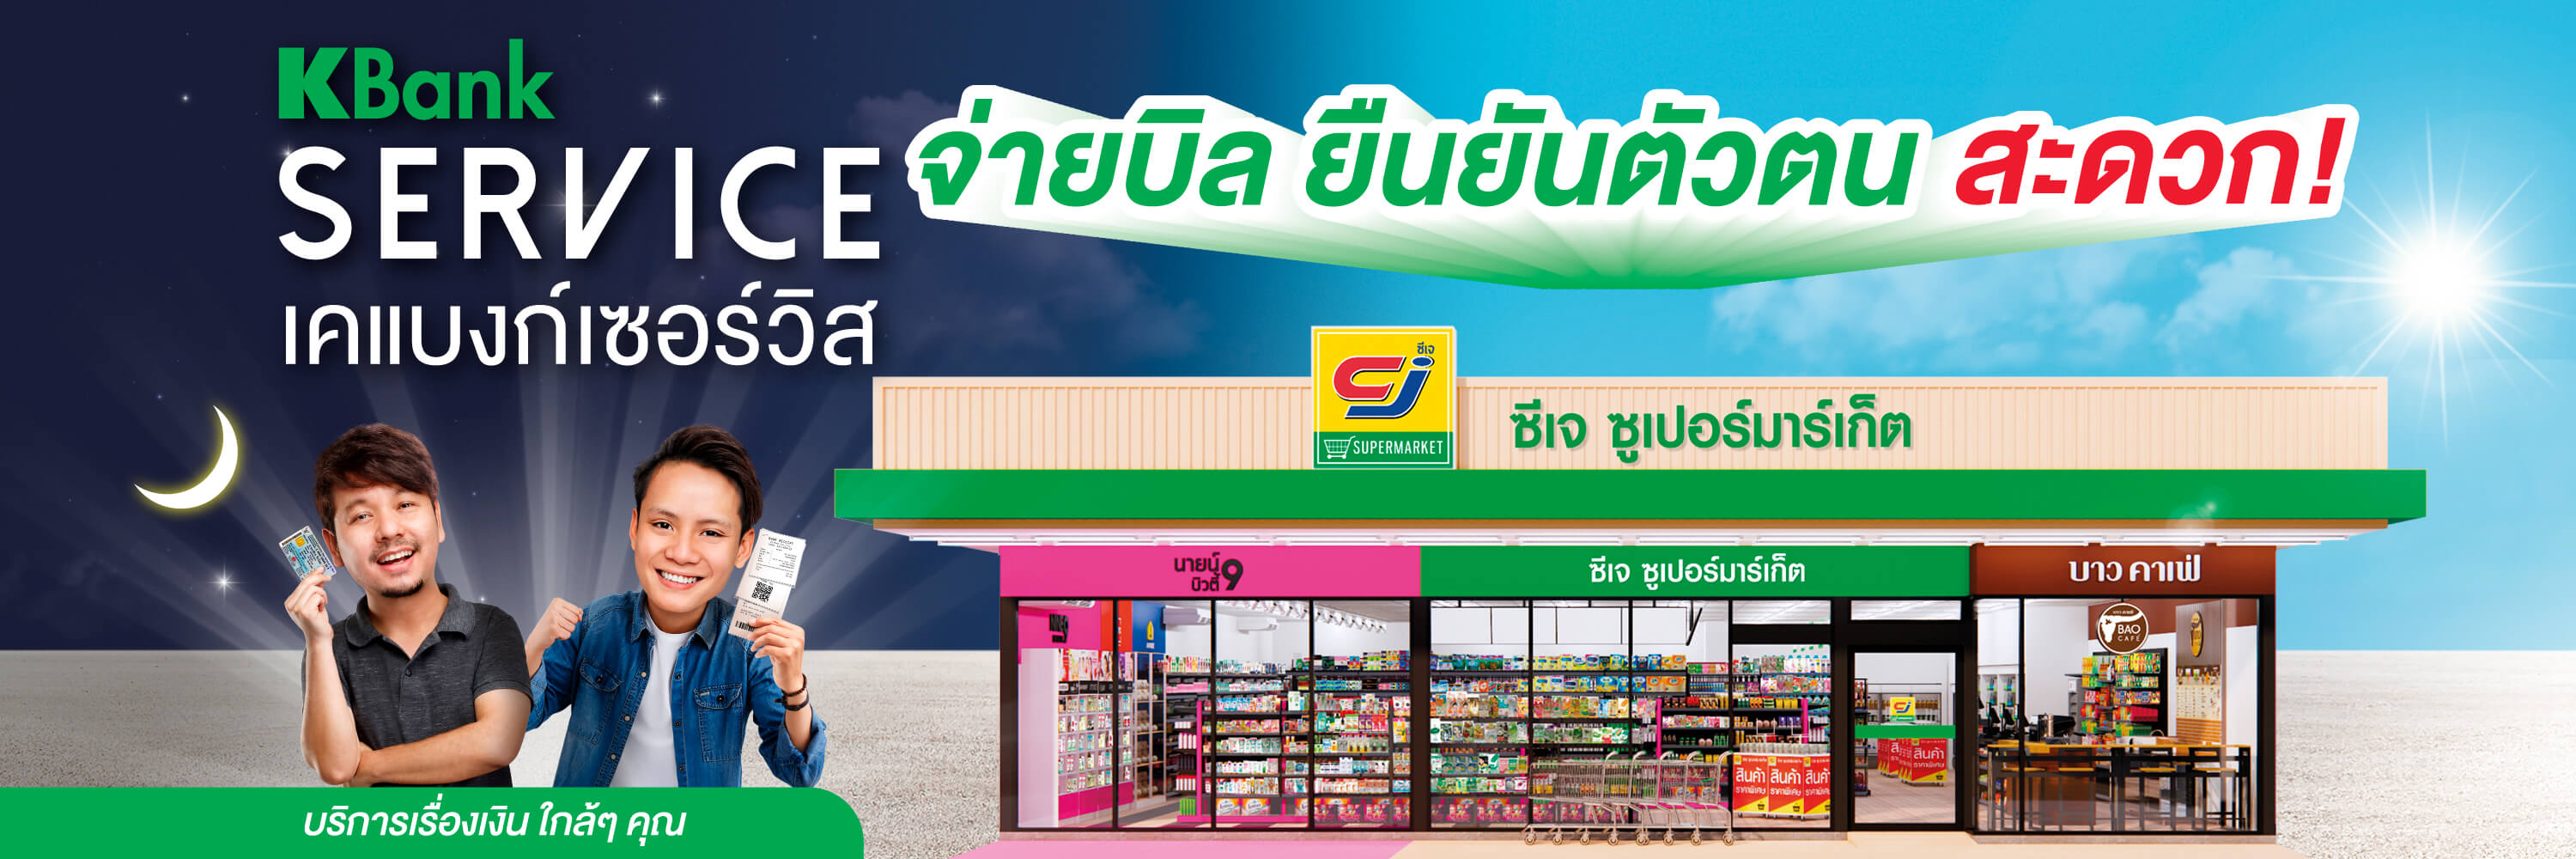 บริการฝาก ถอนเงินสดเข้าบัญชีกสิกรไทย, และ ยืนยันตัวตนที่ซีเจ ซูเปอร์มาร์เก็ต (CJ Supermarket)